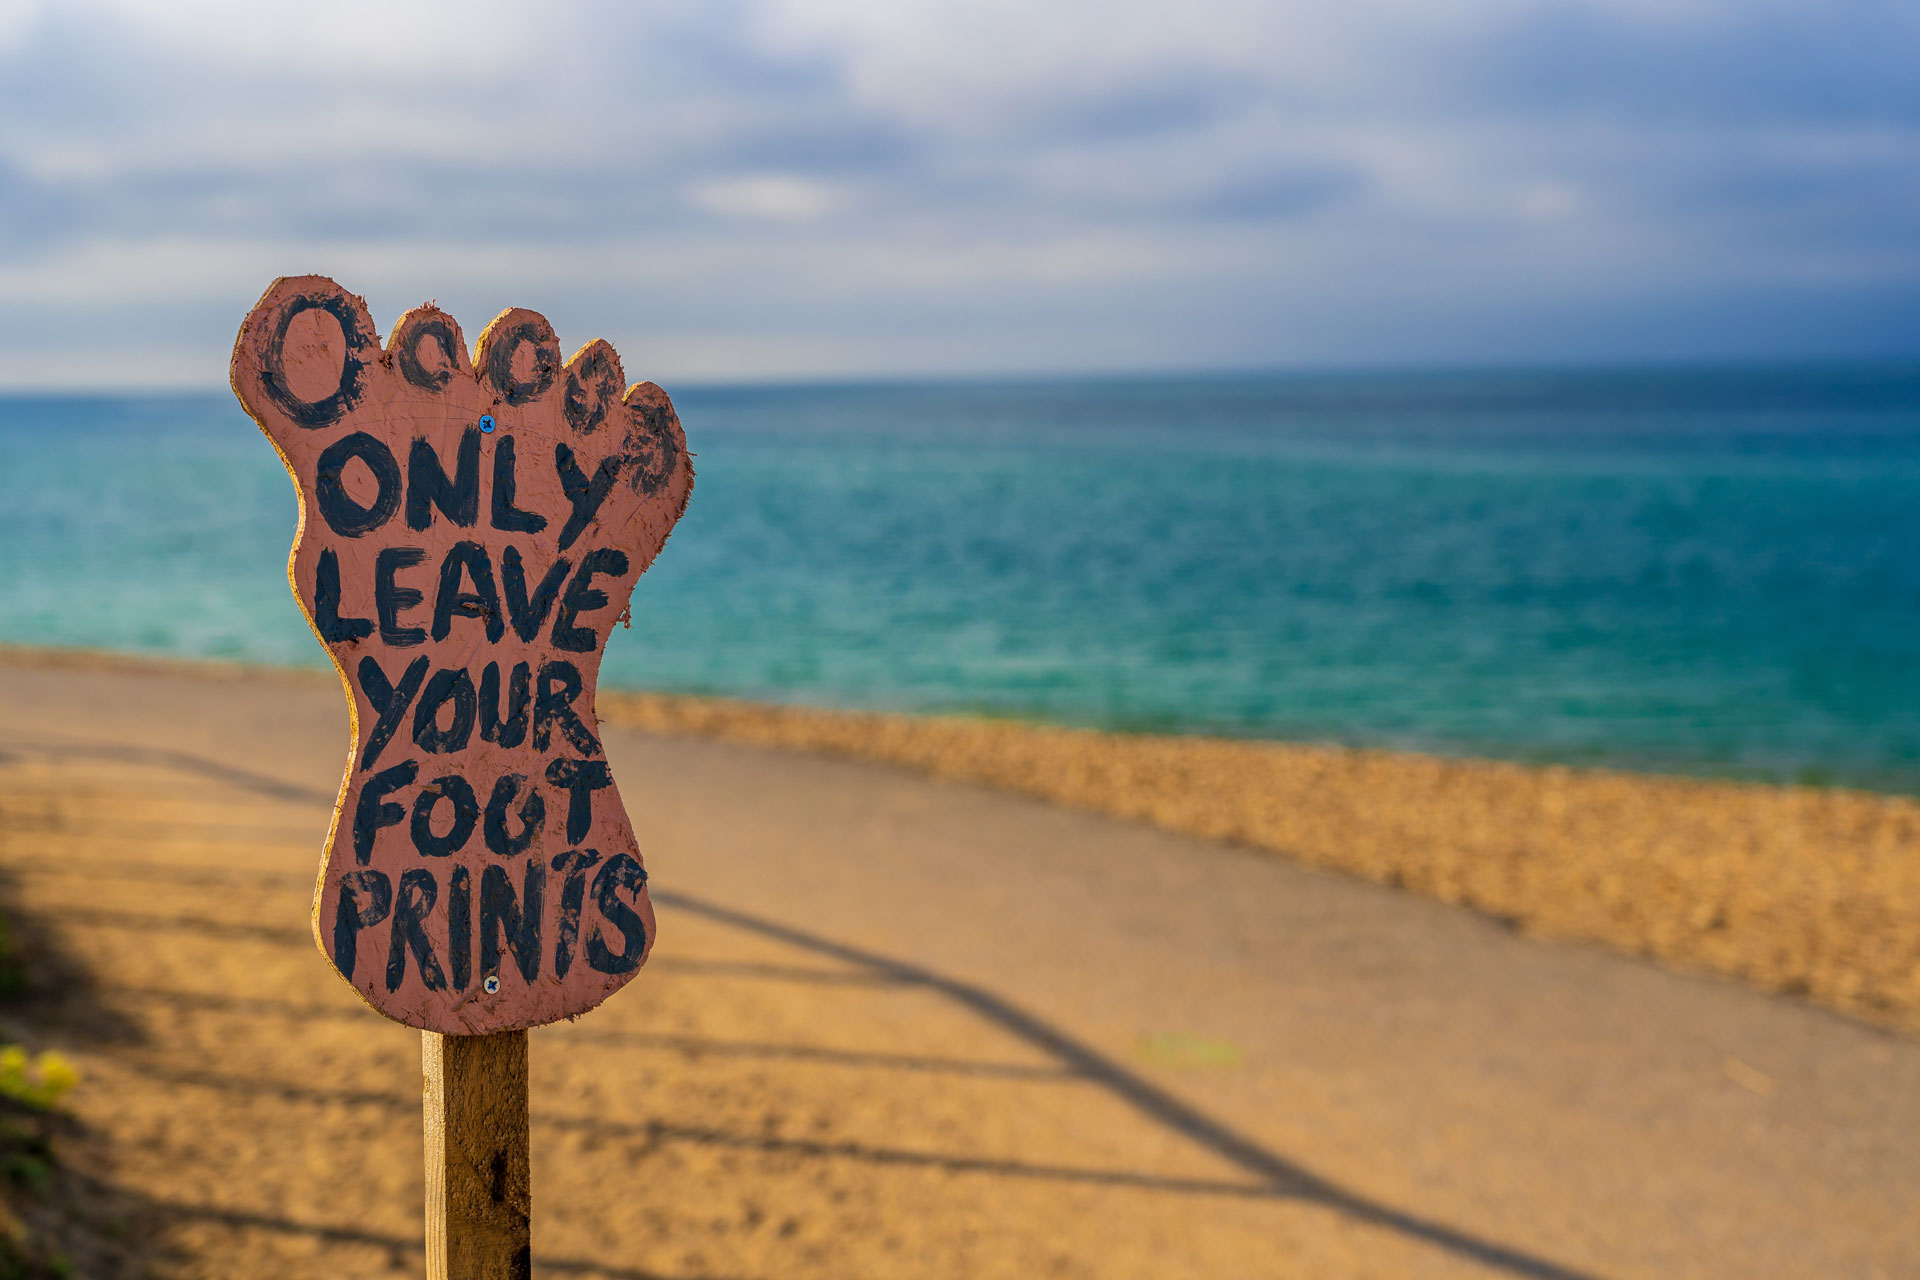 Footprint on a beach